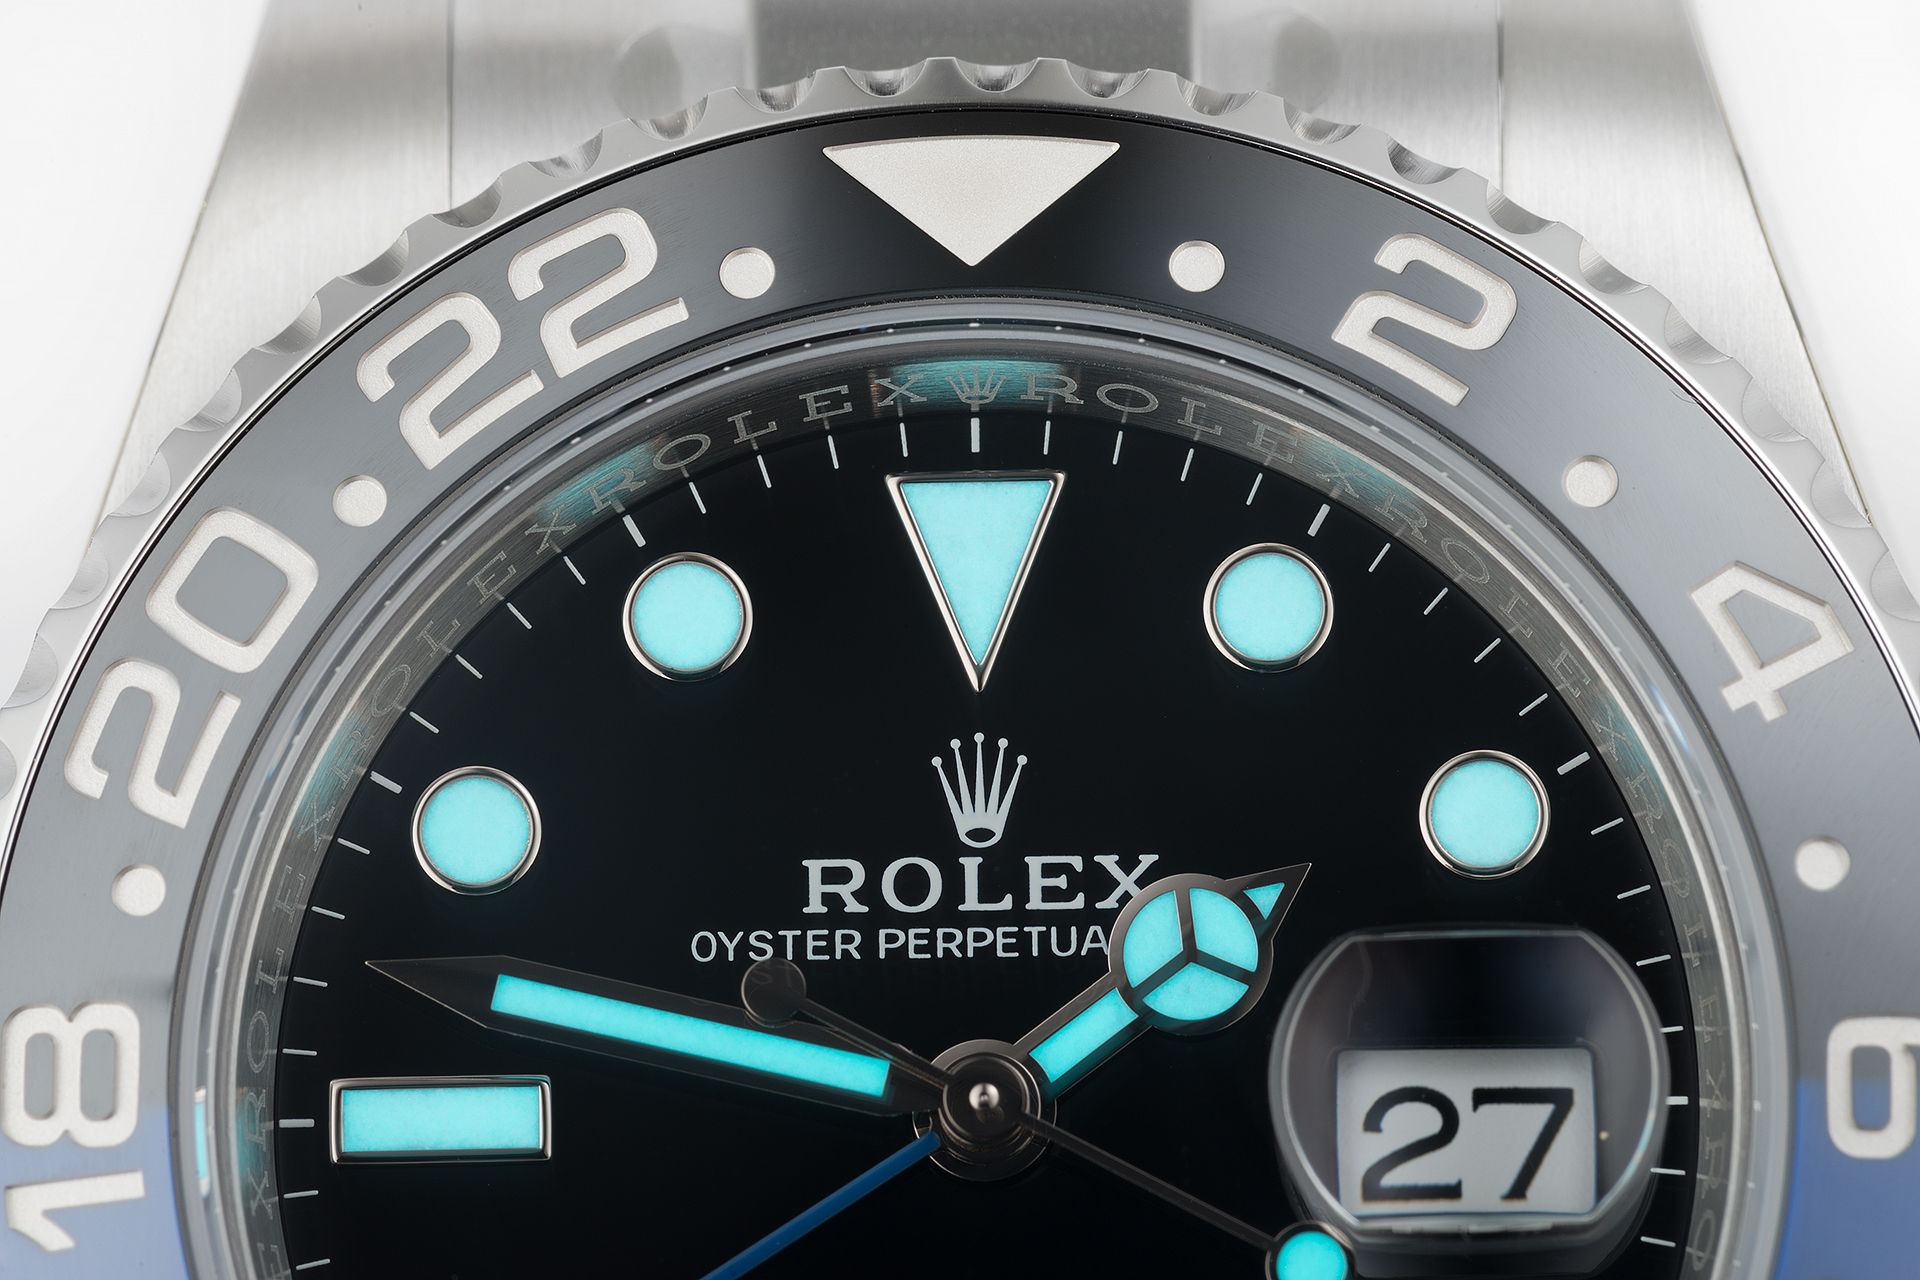 ref 116710BLNR | 'Batman' 5 Year Warranty | Rolex GMT-Master II